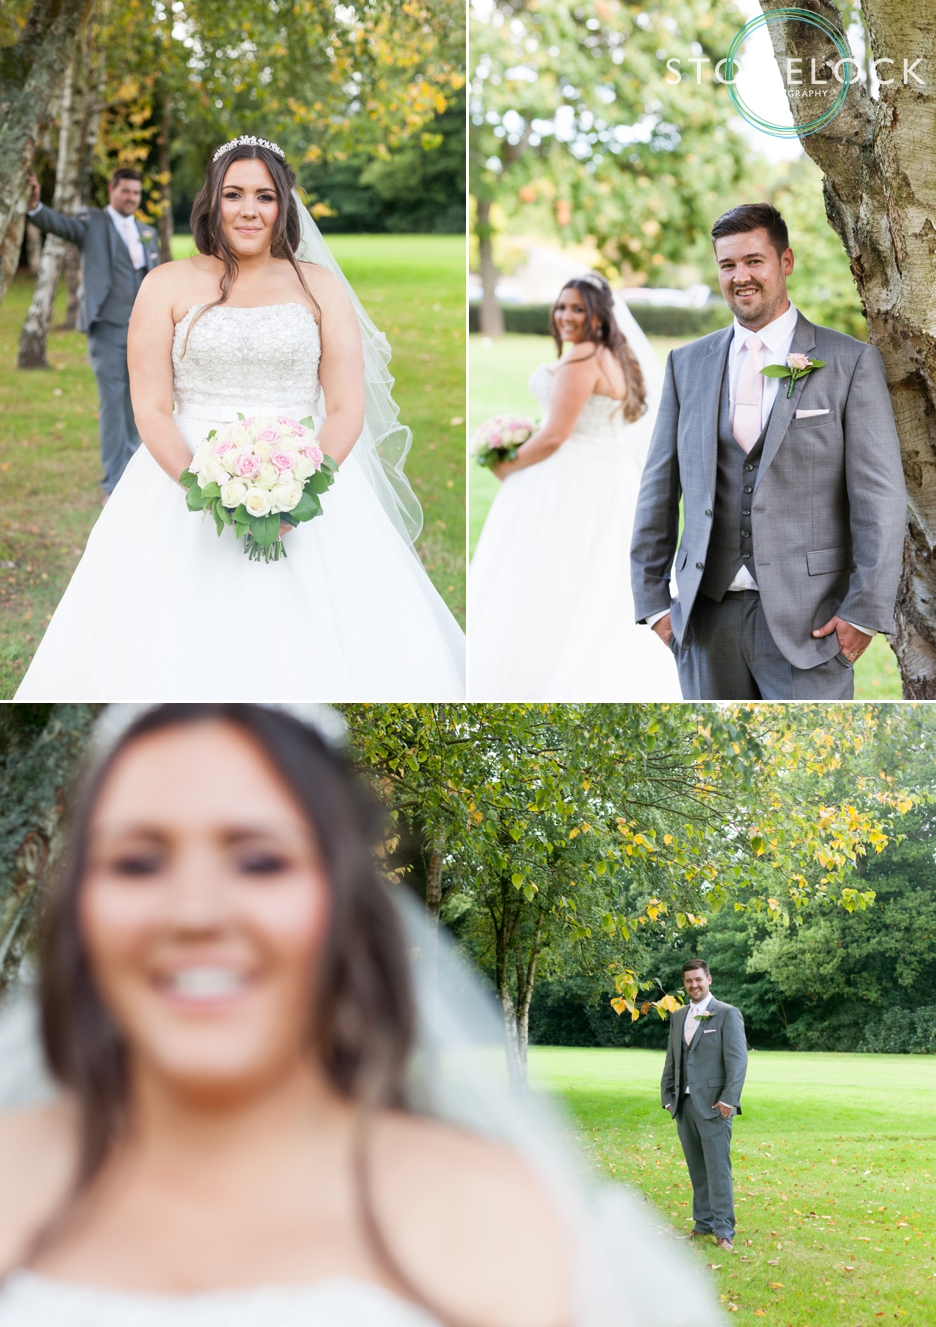 Bride & Groom Wedding Photography at Copthorne Effingham Park Hotel Surrey